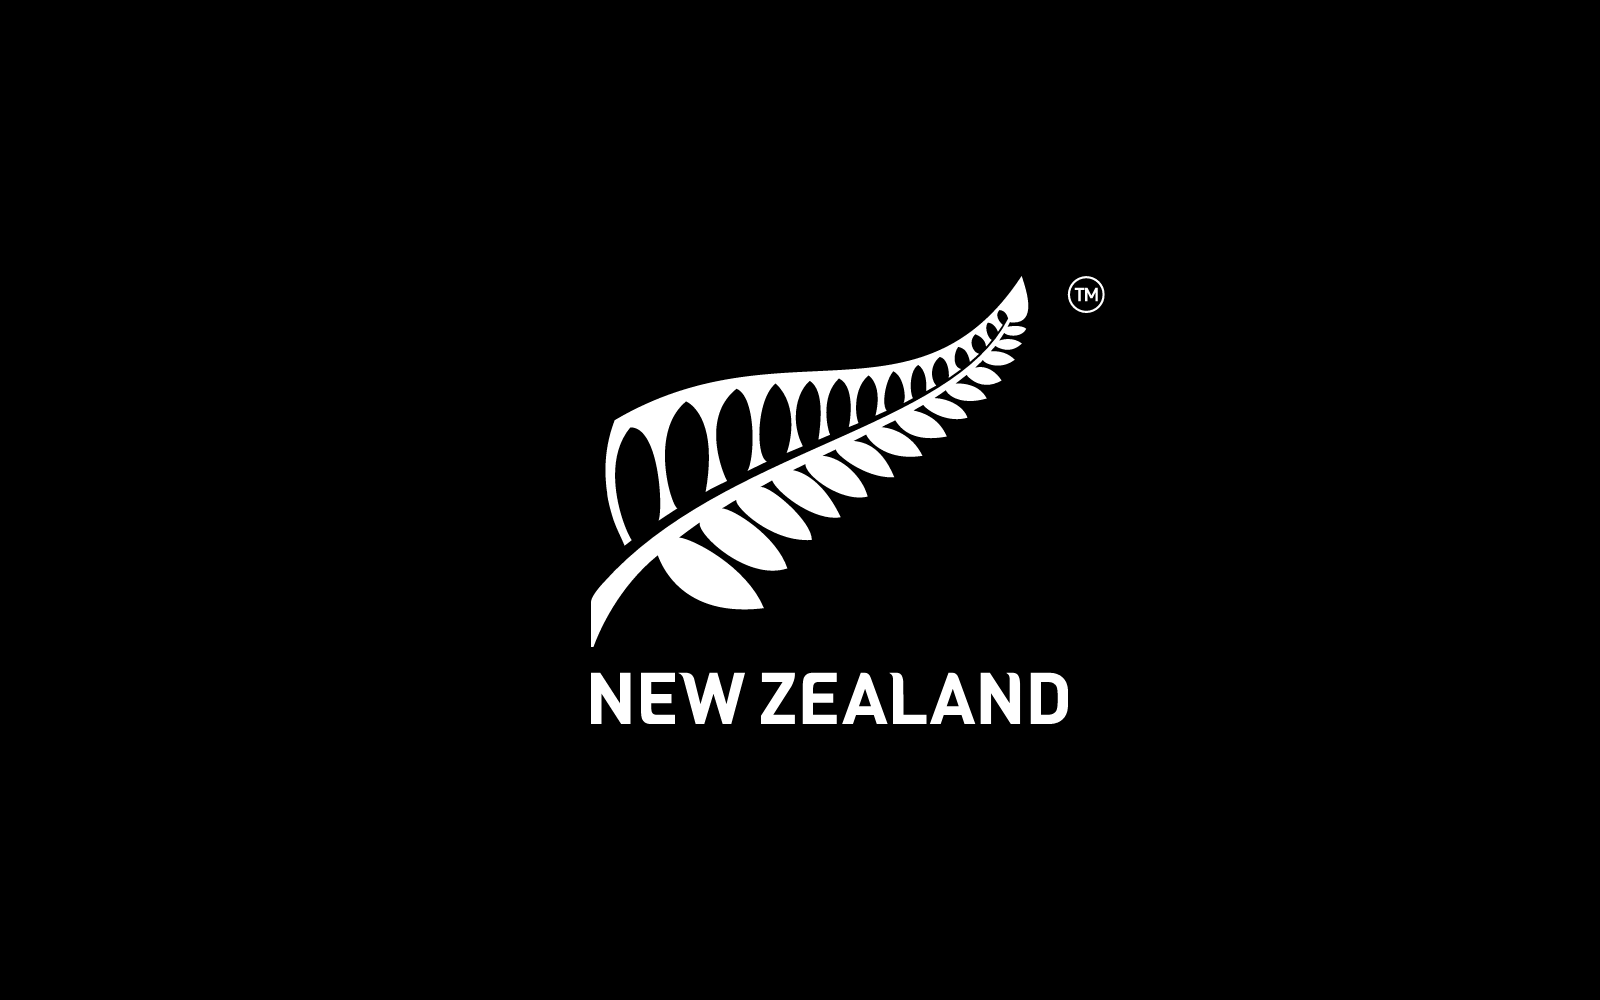 New Zealand Enterprise Image